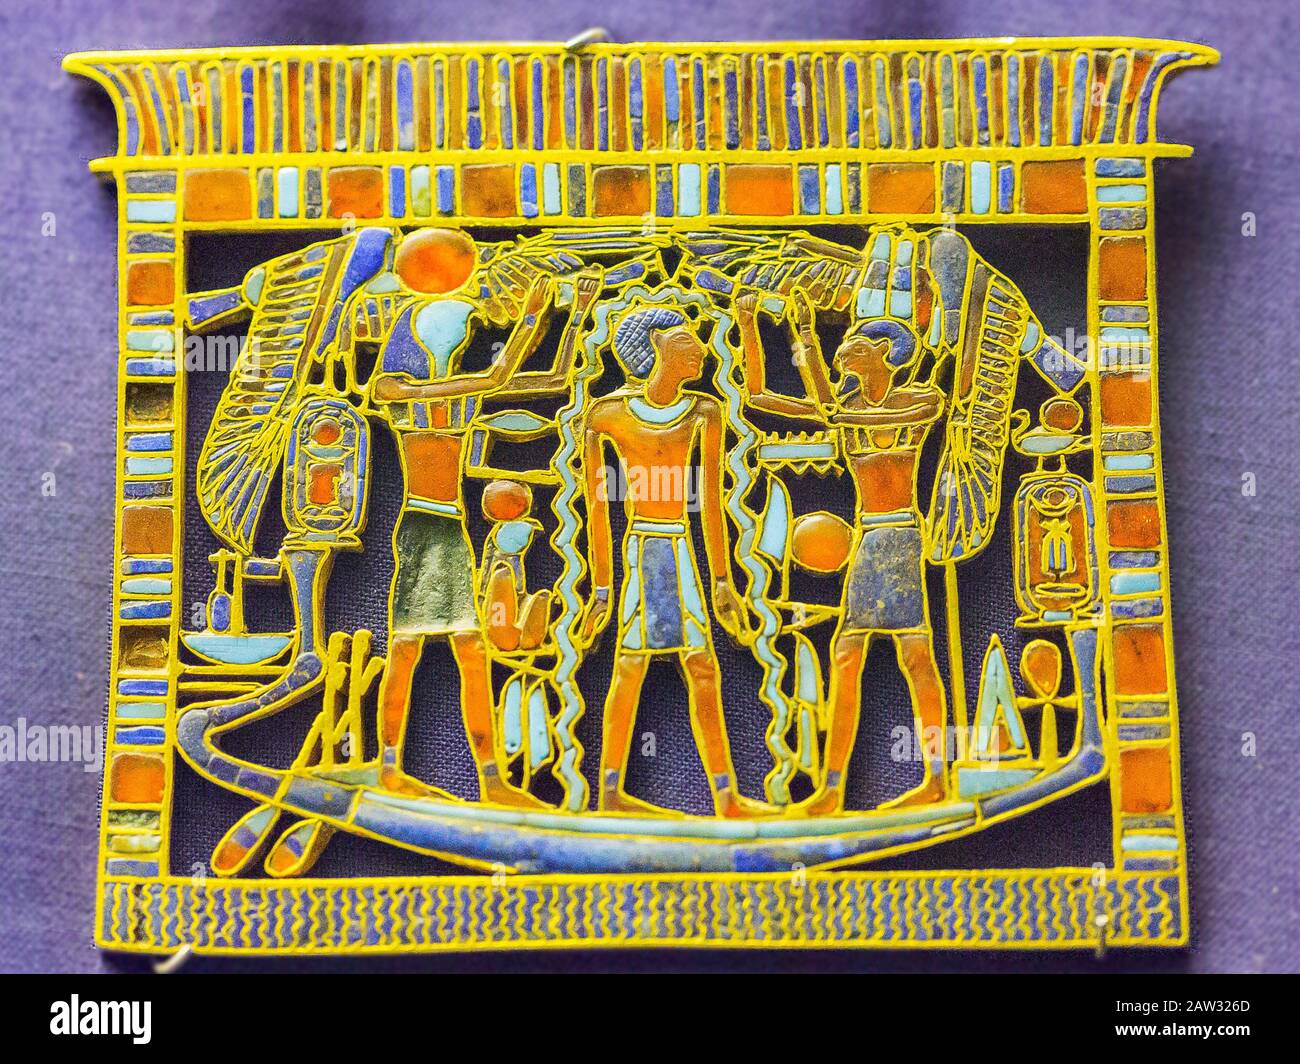 Cairo, Museo Egizio, pettorale a forma di santuario, trovato nella tomba della regina Ahhotep, la madre di Ahmosis, Dra Abu el Naga, Luxor. Foto Stock